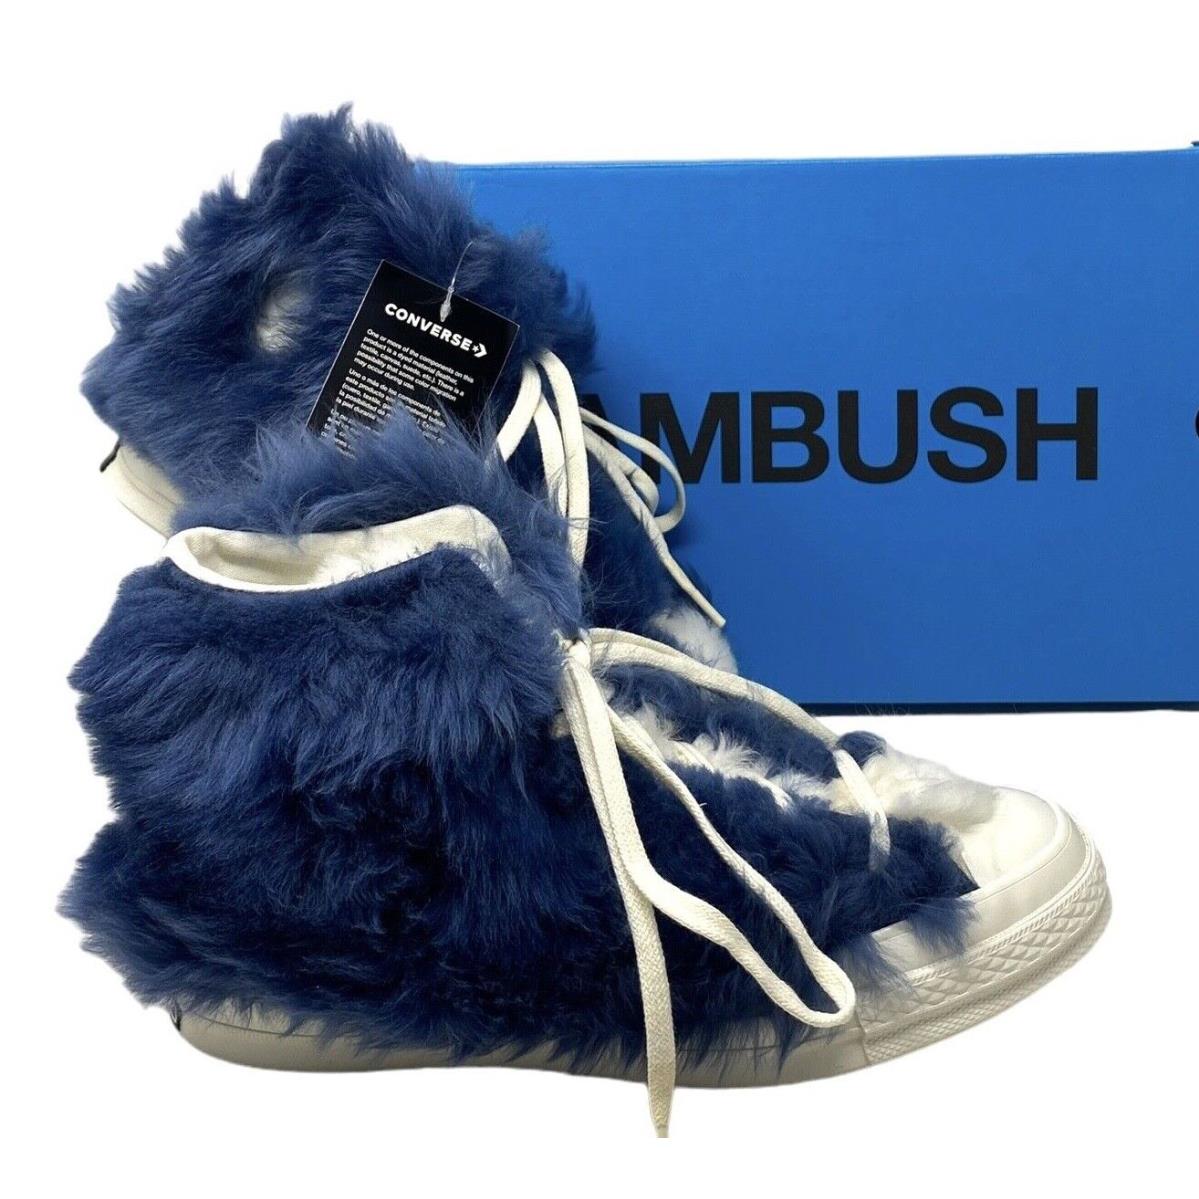 Converse Chuck 70 Fuzzy Hi Sneakers Navy Blue Shearling Wool Women Shoes 170587C